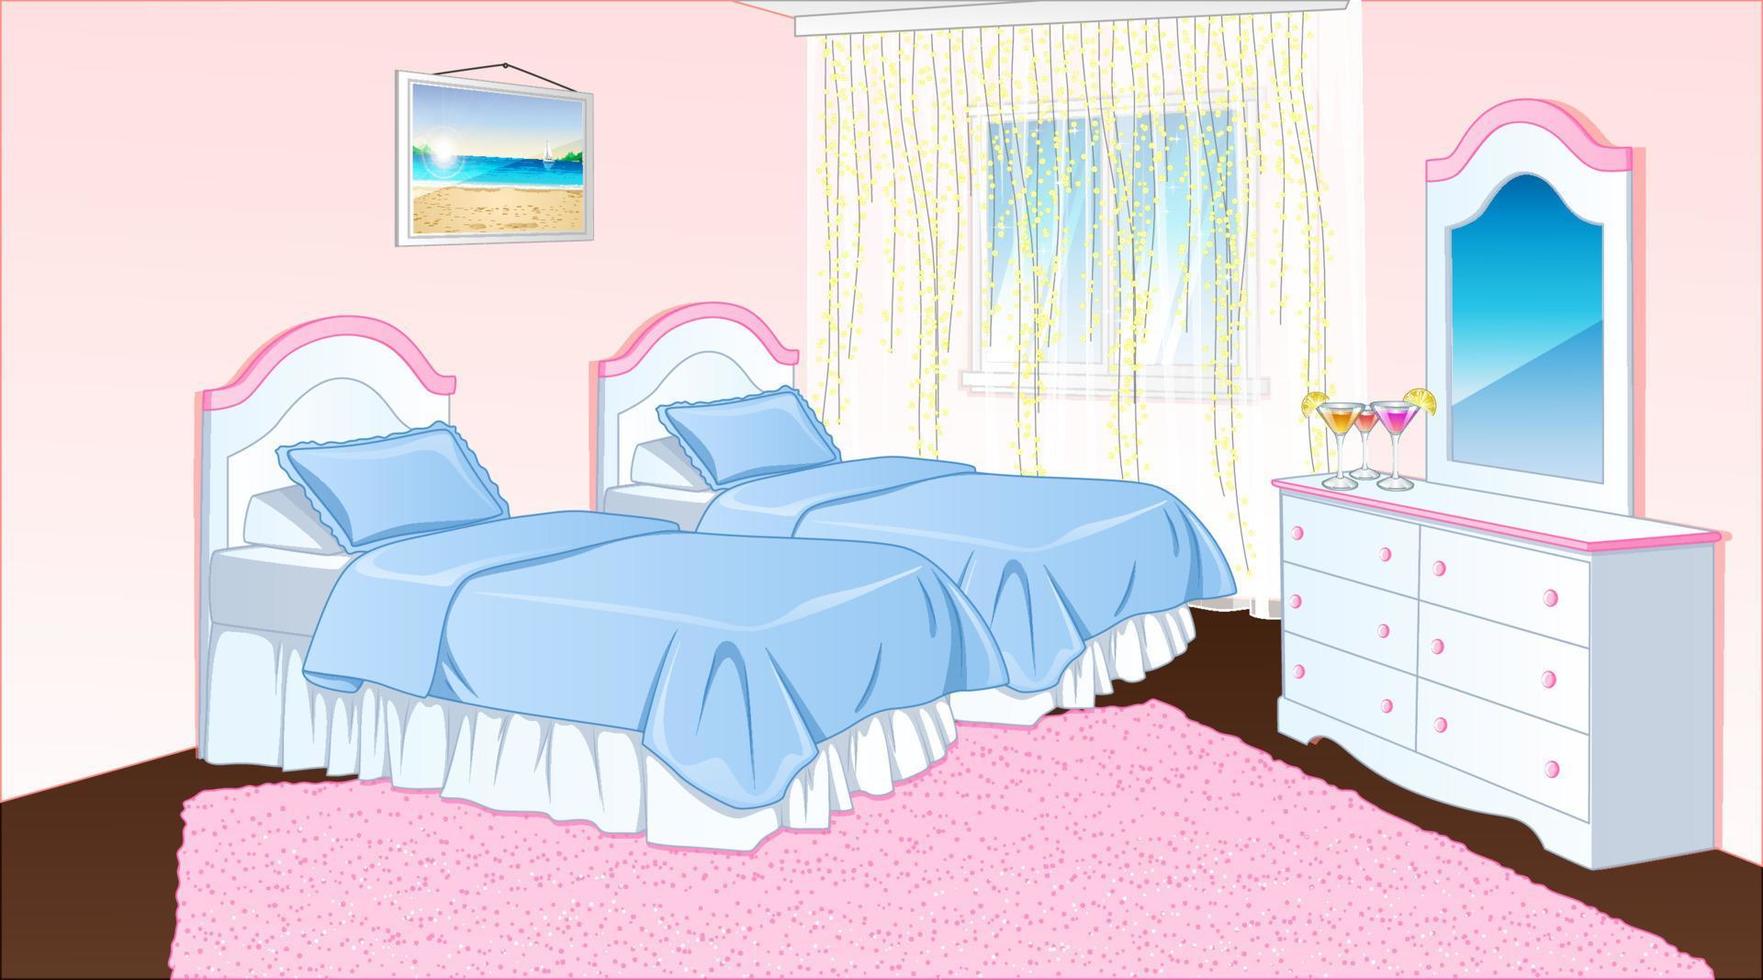 cena de fundo de quarto feminino adolescente festa do pijama em estilo cartoon. ilustração vetorial vetor